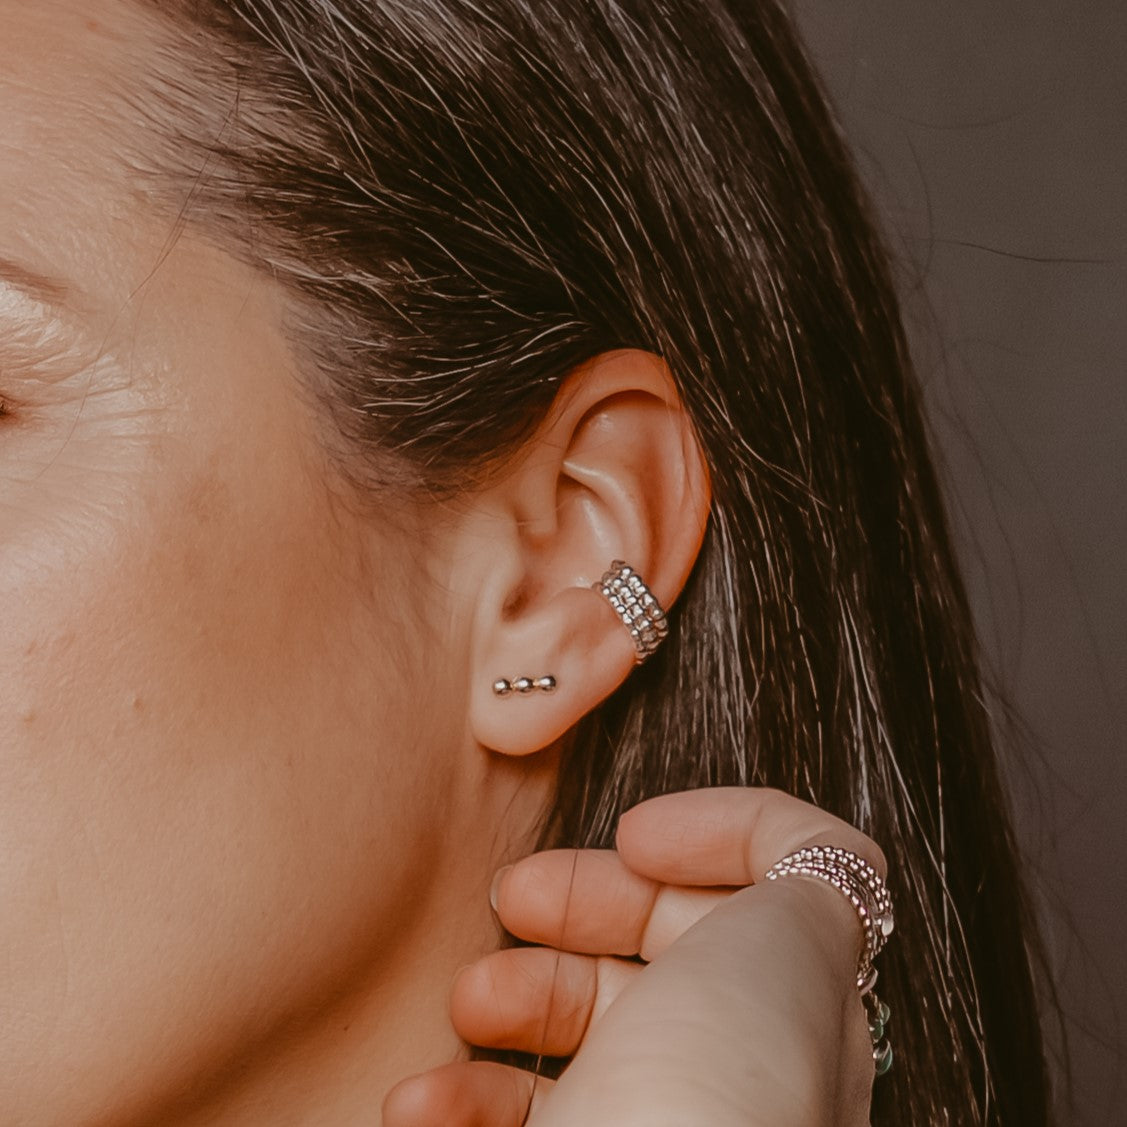 Woman wearing three ear cuffs with earrings